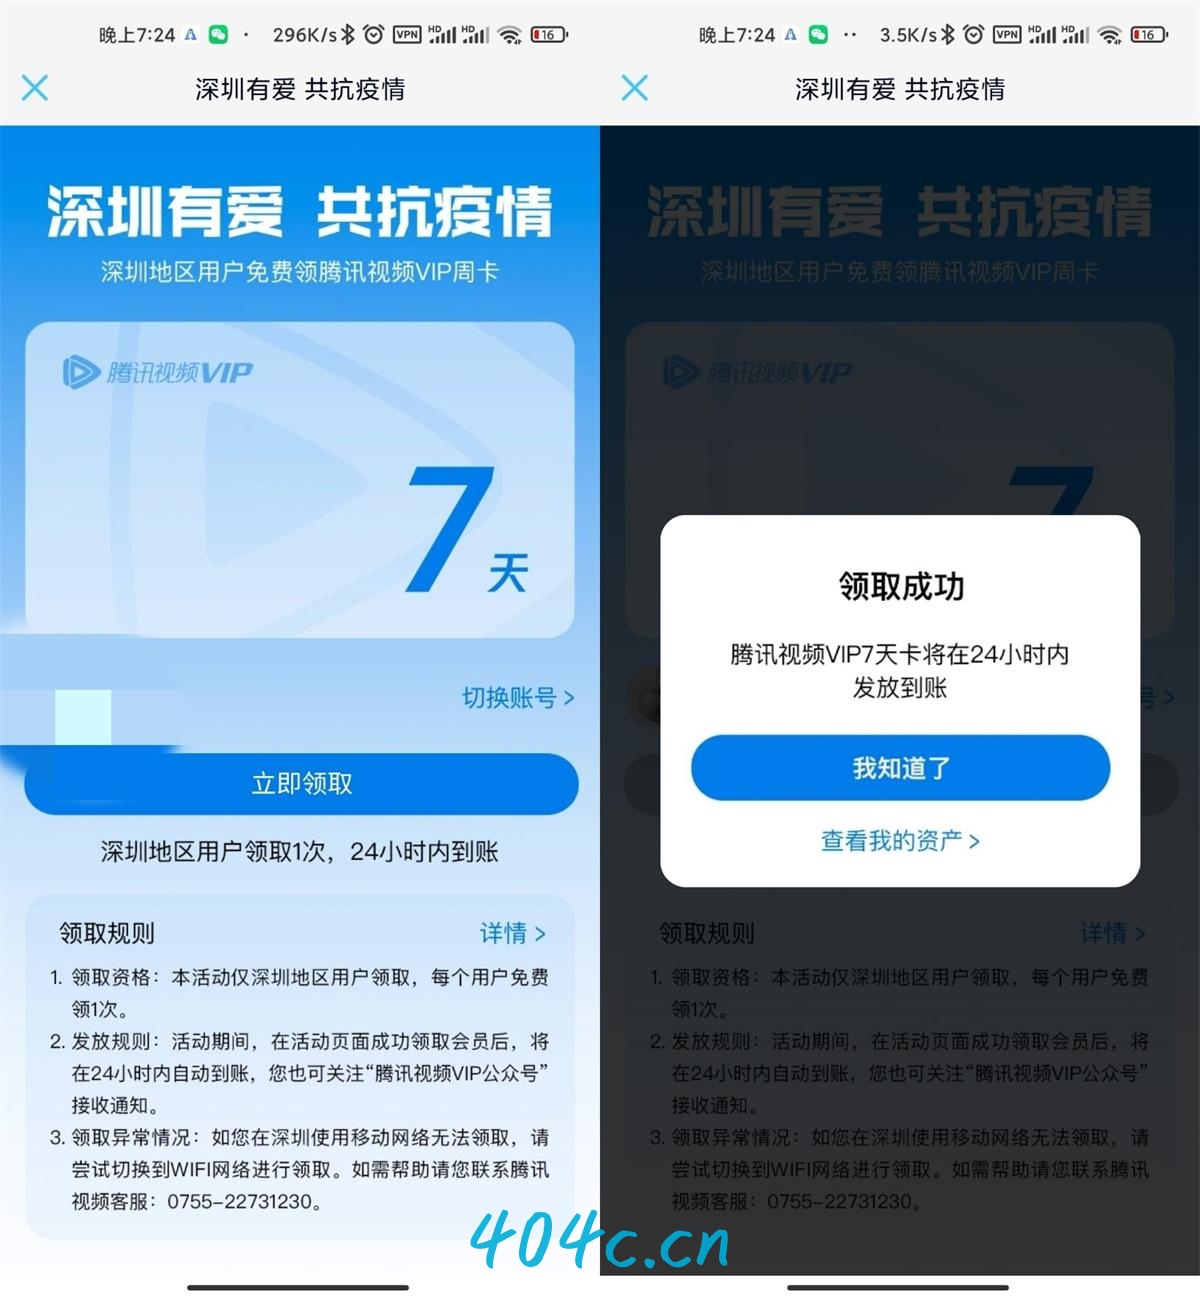 深圳用户领腾讯视频会员周卡-星礼分享站